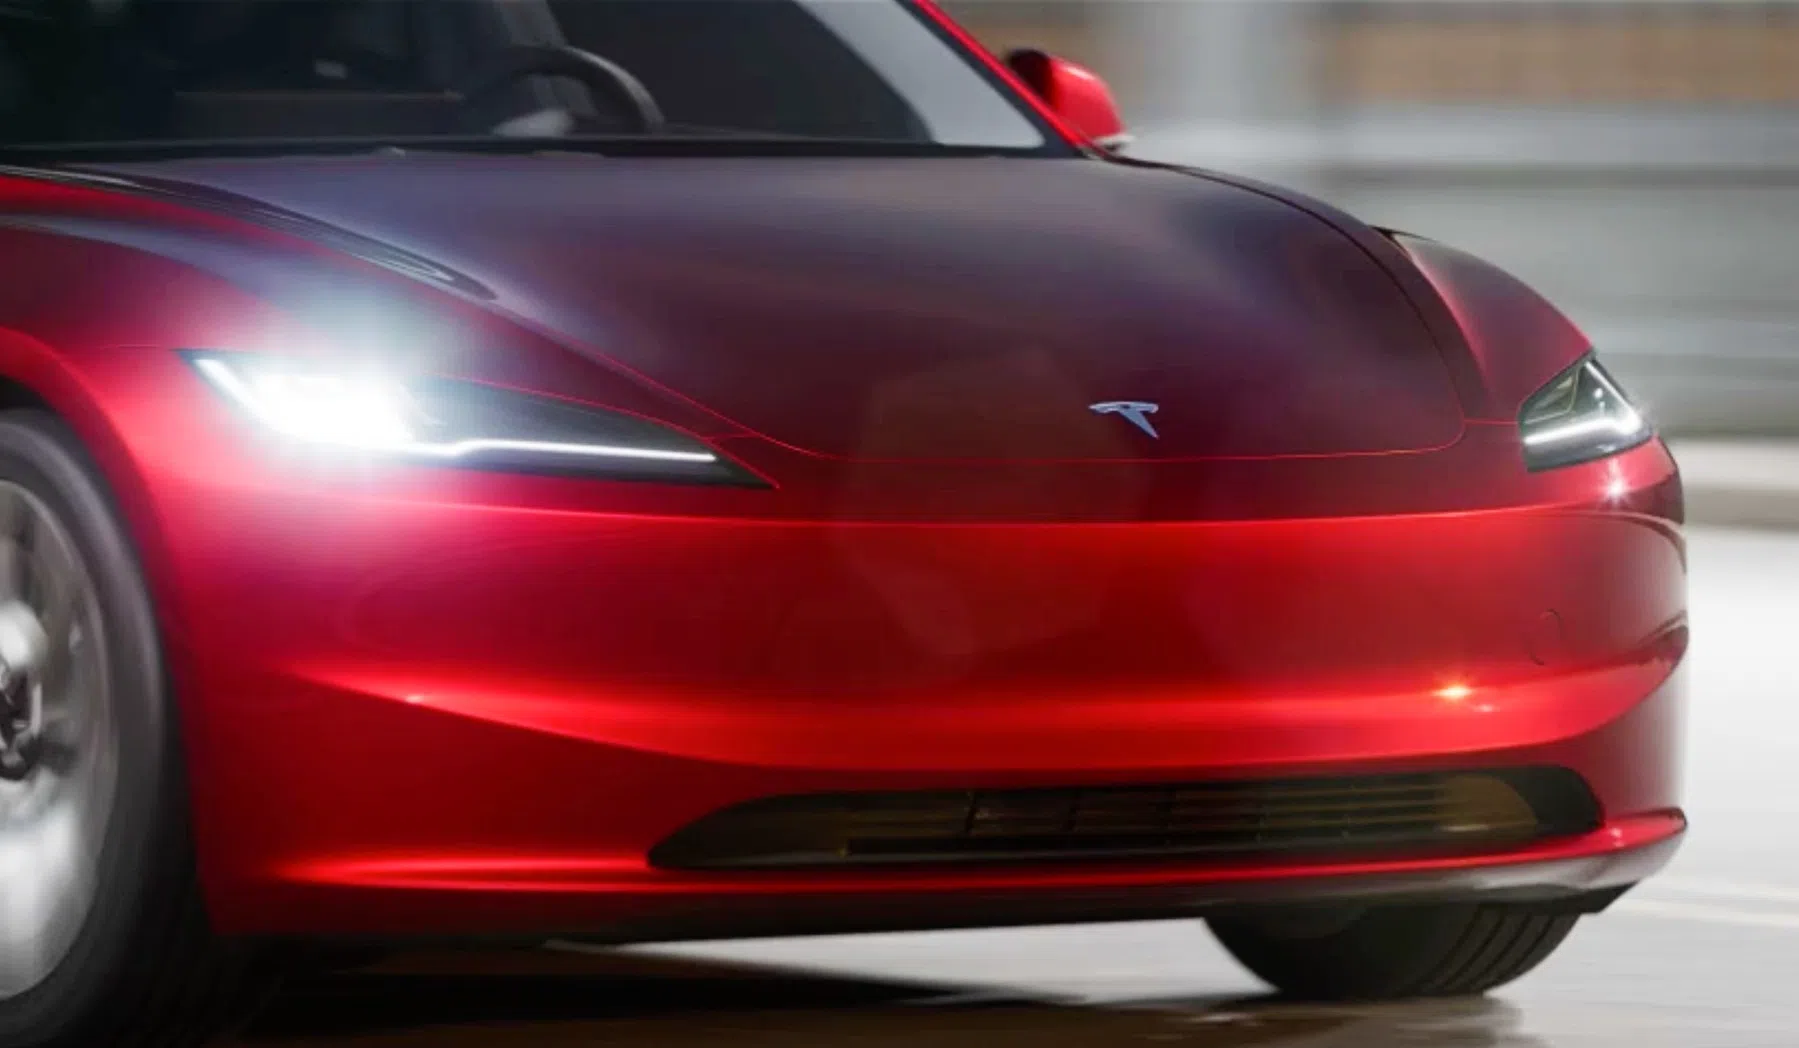 Duurtest vernieuwde Tesla Model 3: het zit 'm in de details